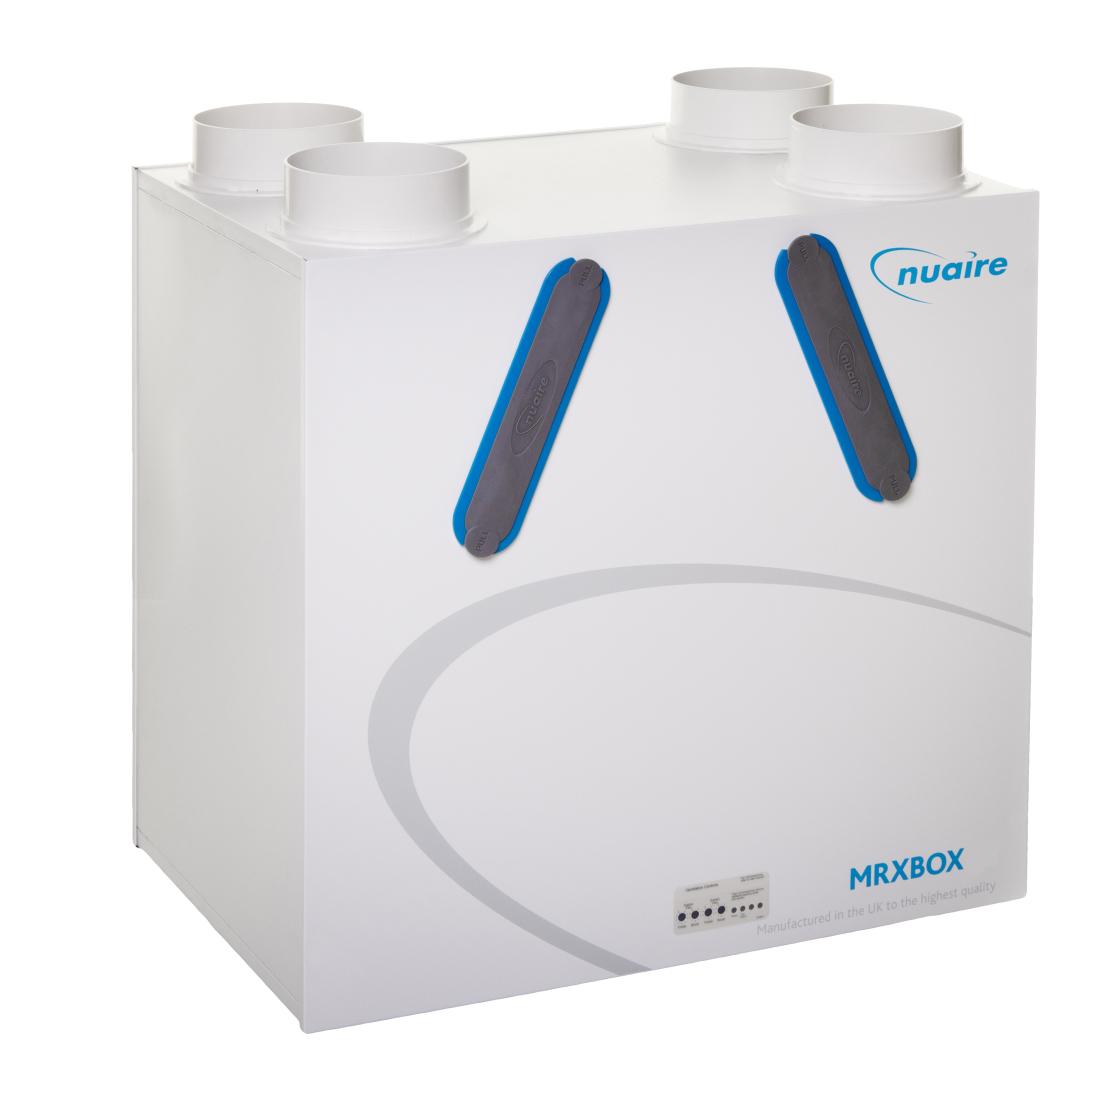 Nuaire MRXBOXAB-ECO2 Heat Recovery System